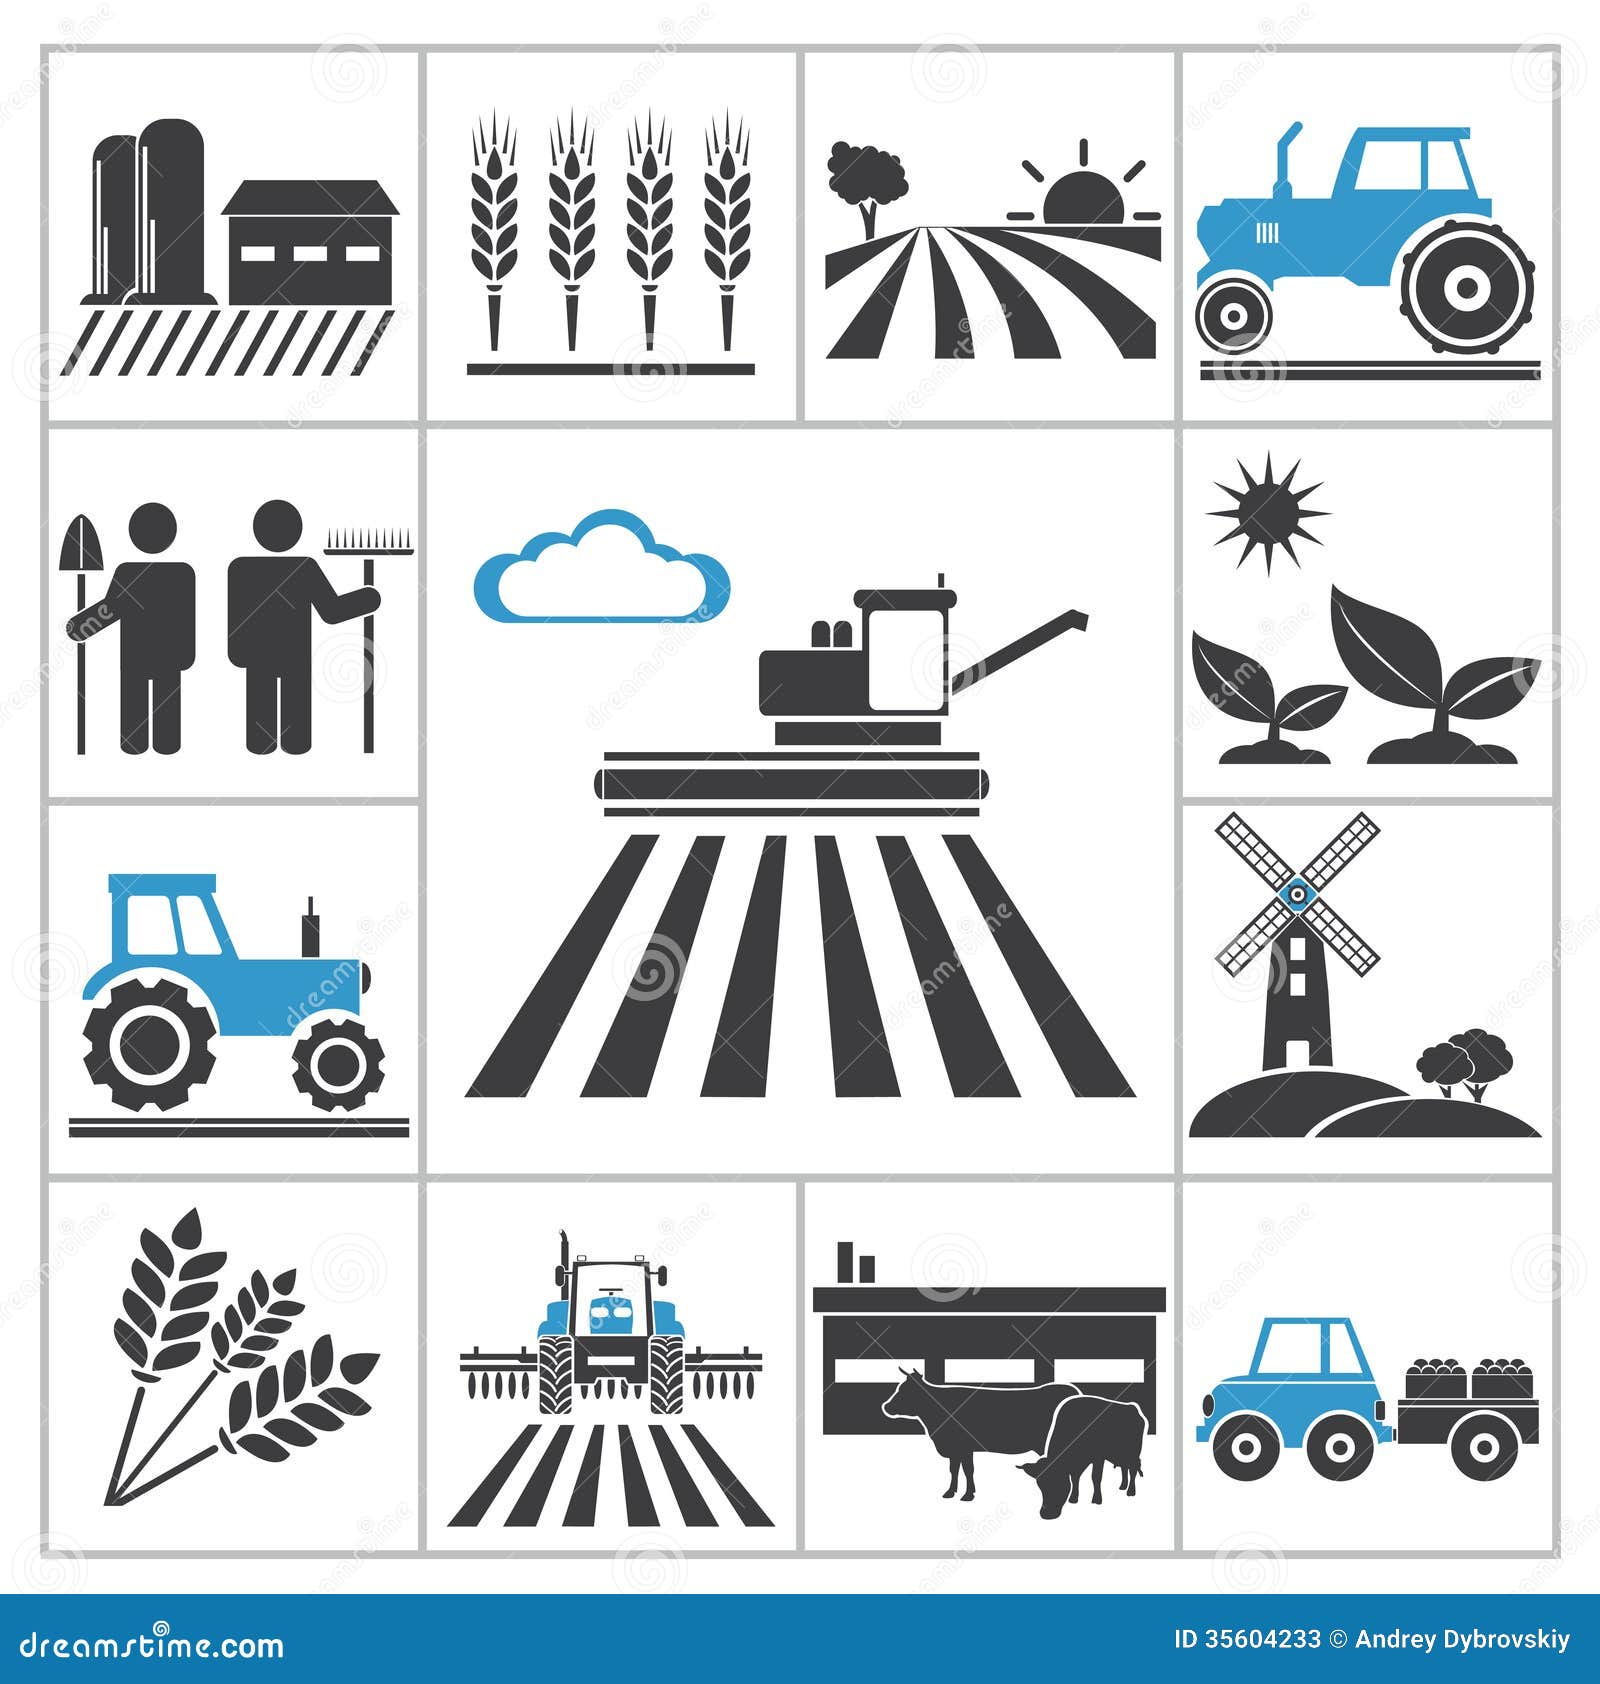 Значок сх. Сельское хозяйство значок. Пиктограмма сельское хозяйство. Сельскохозяйственные символы. Сельское хозяйство вектор.